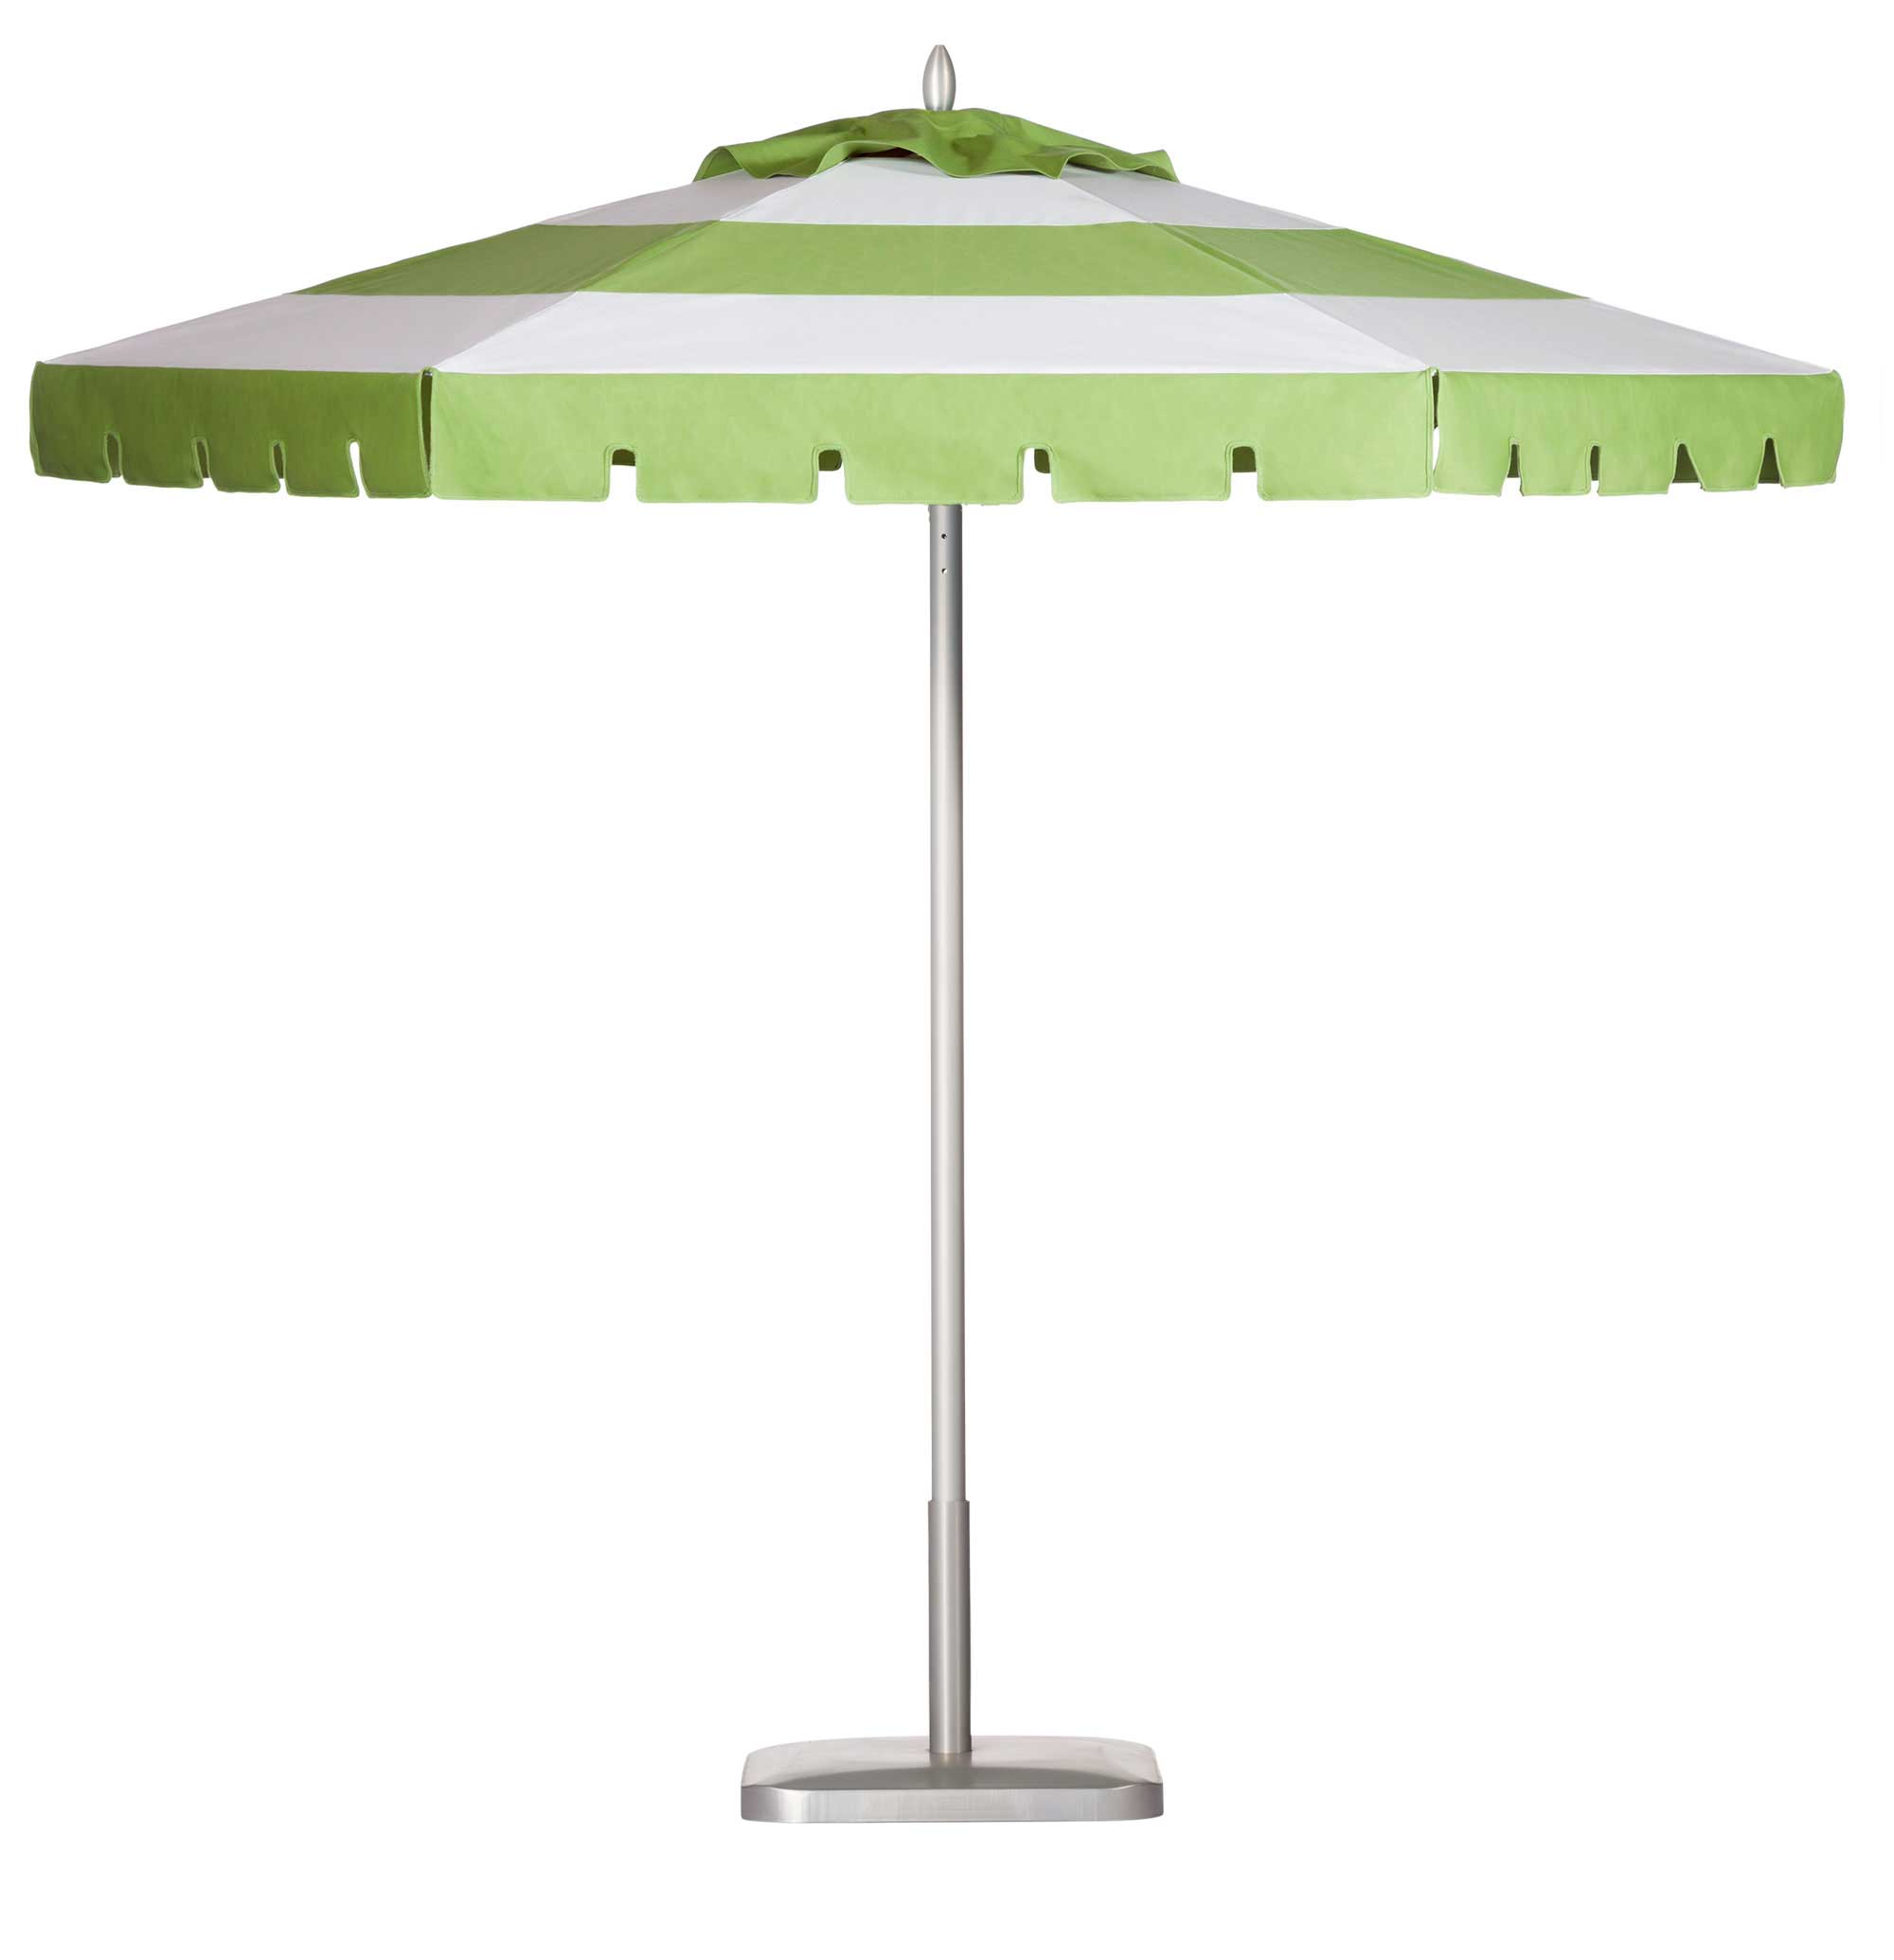 Kiwi Green / Whitecap Umbrella Image